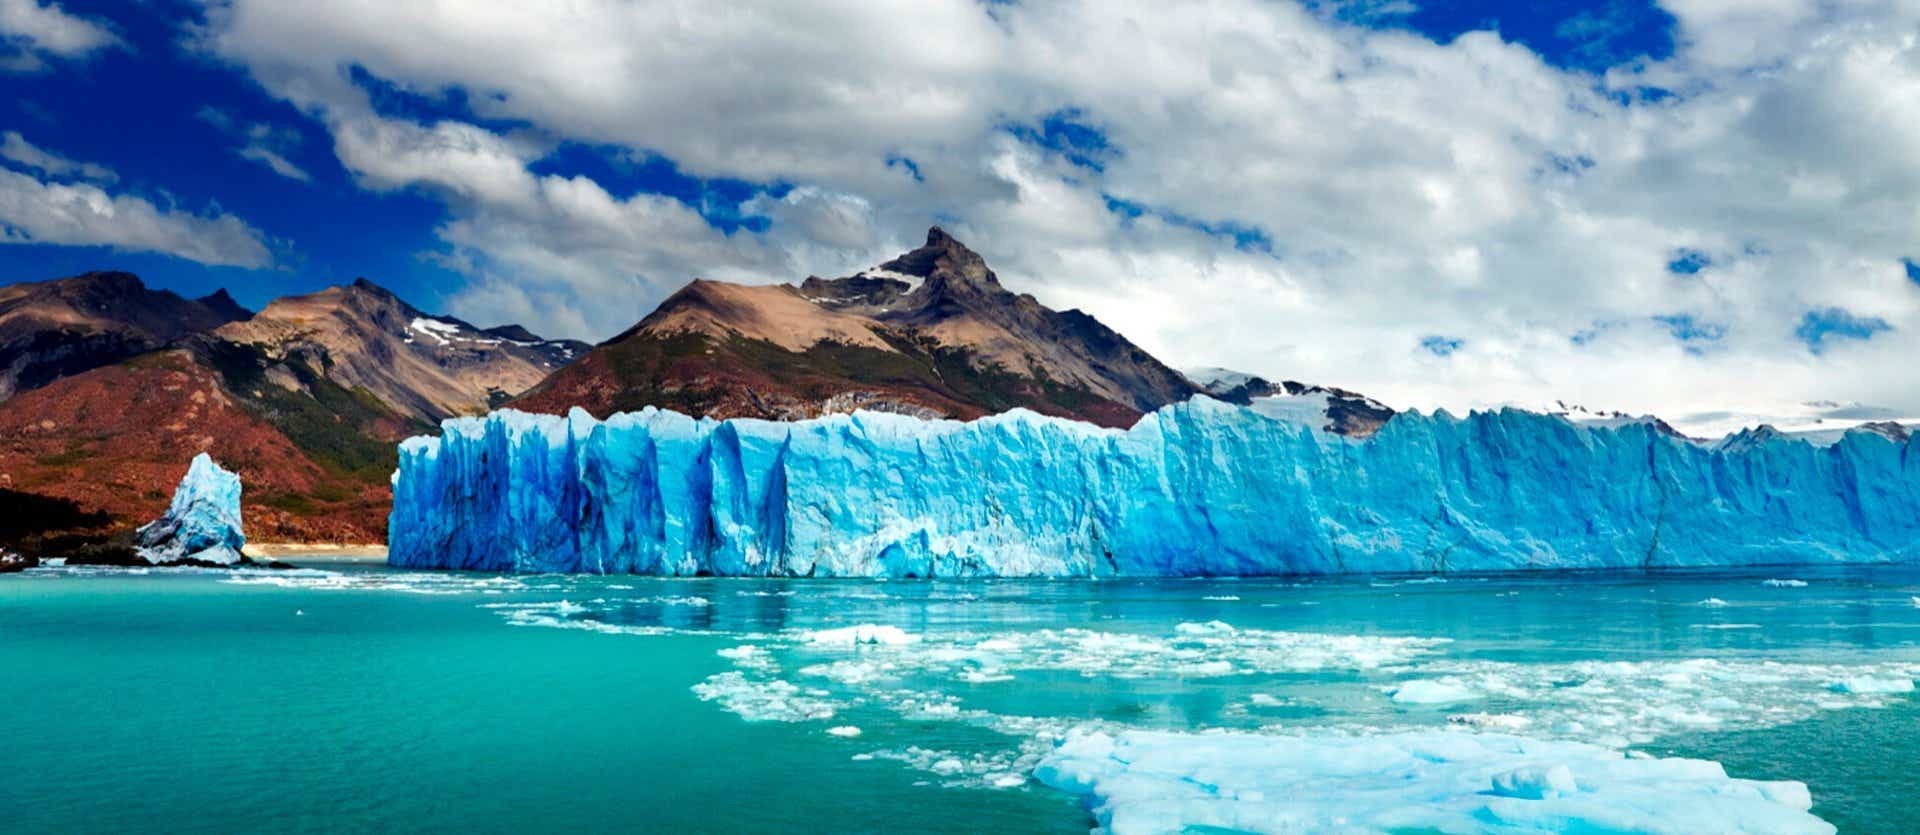 Glaciar <span class="iconos separador"></span> Perito Moreno <span class="iconos separador"></span> Argentina